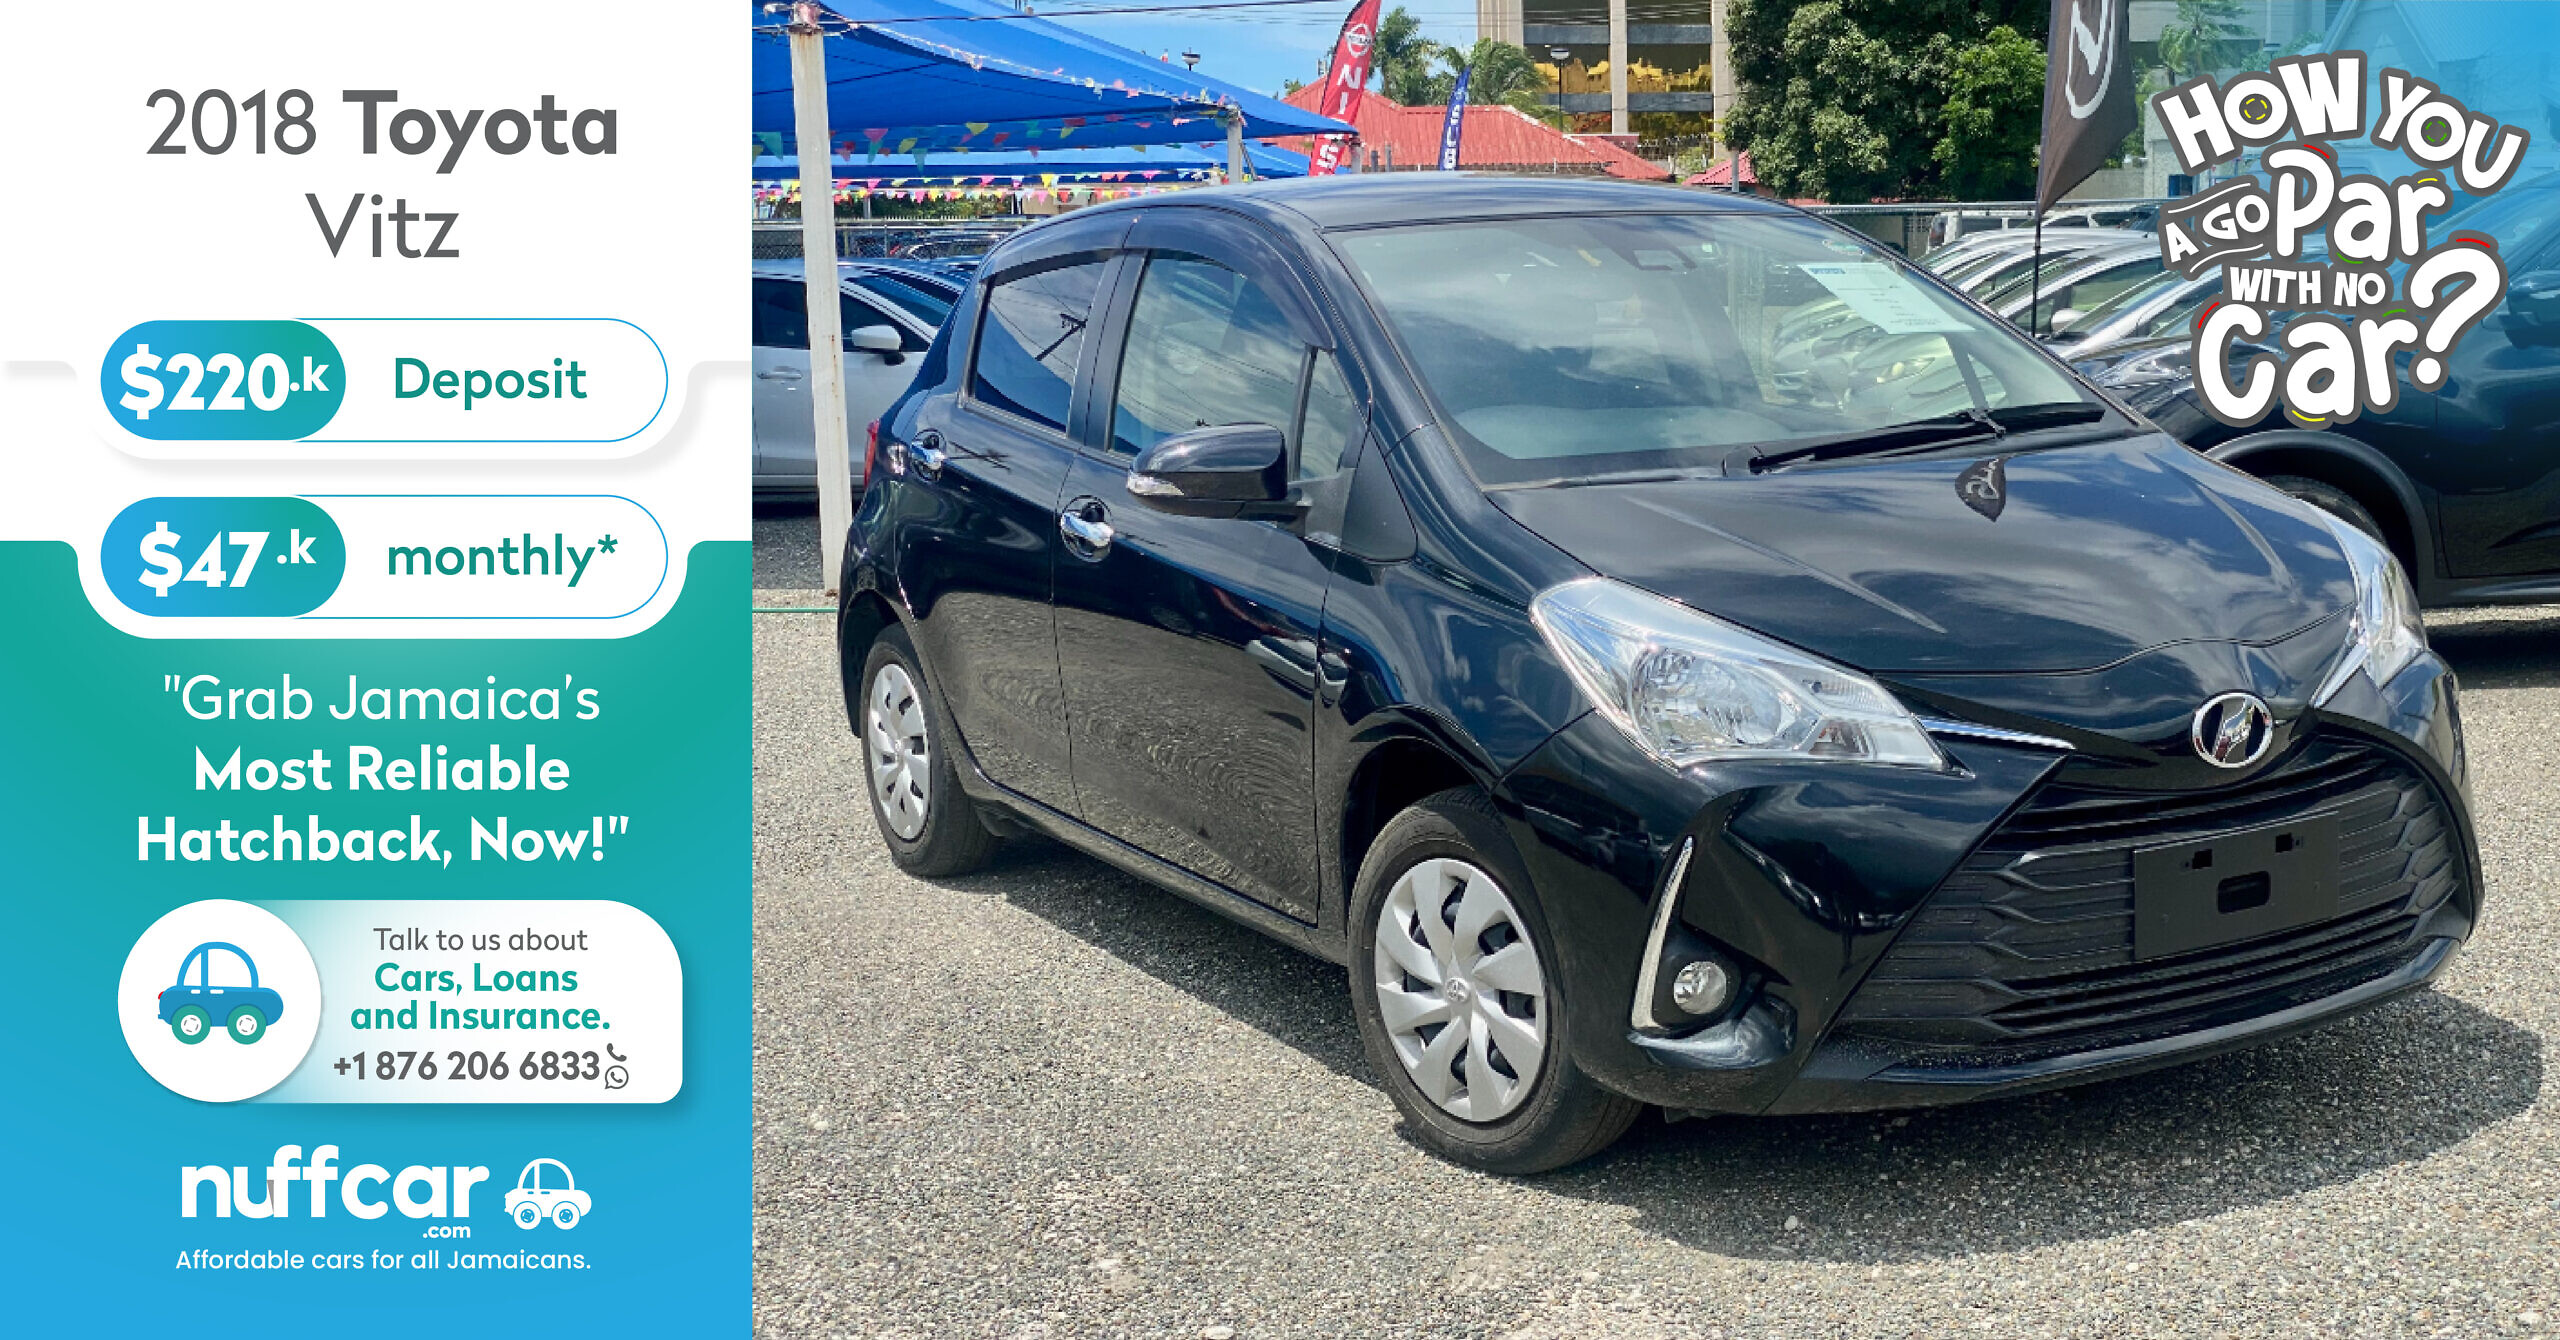 2018 Toyota Vitz – Get a Fast n Easy Low Deposit Car Loan